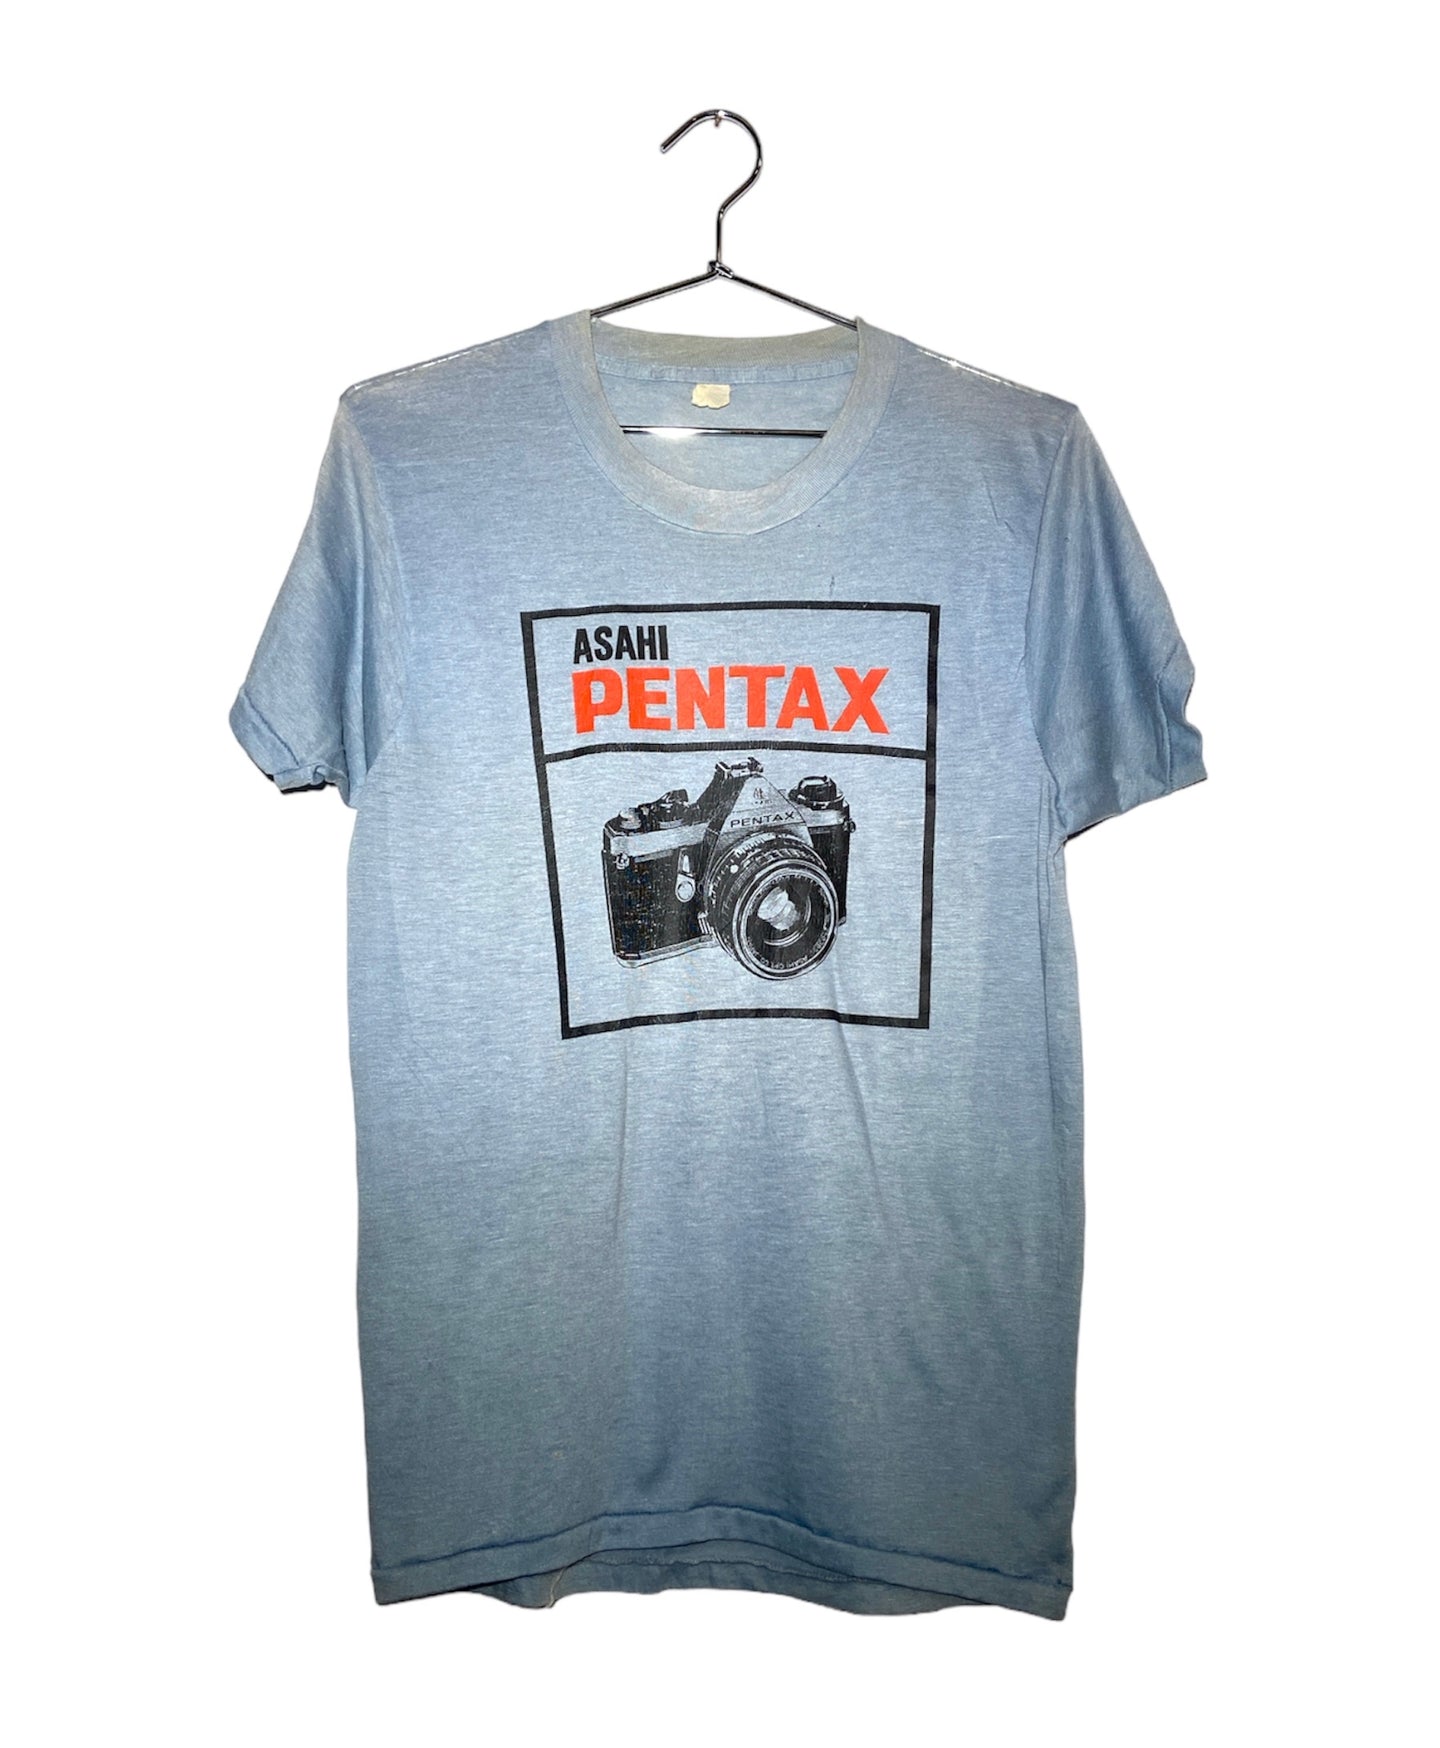 Vintage Asahi Pentax Shirt